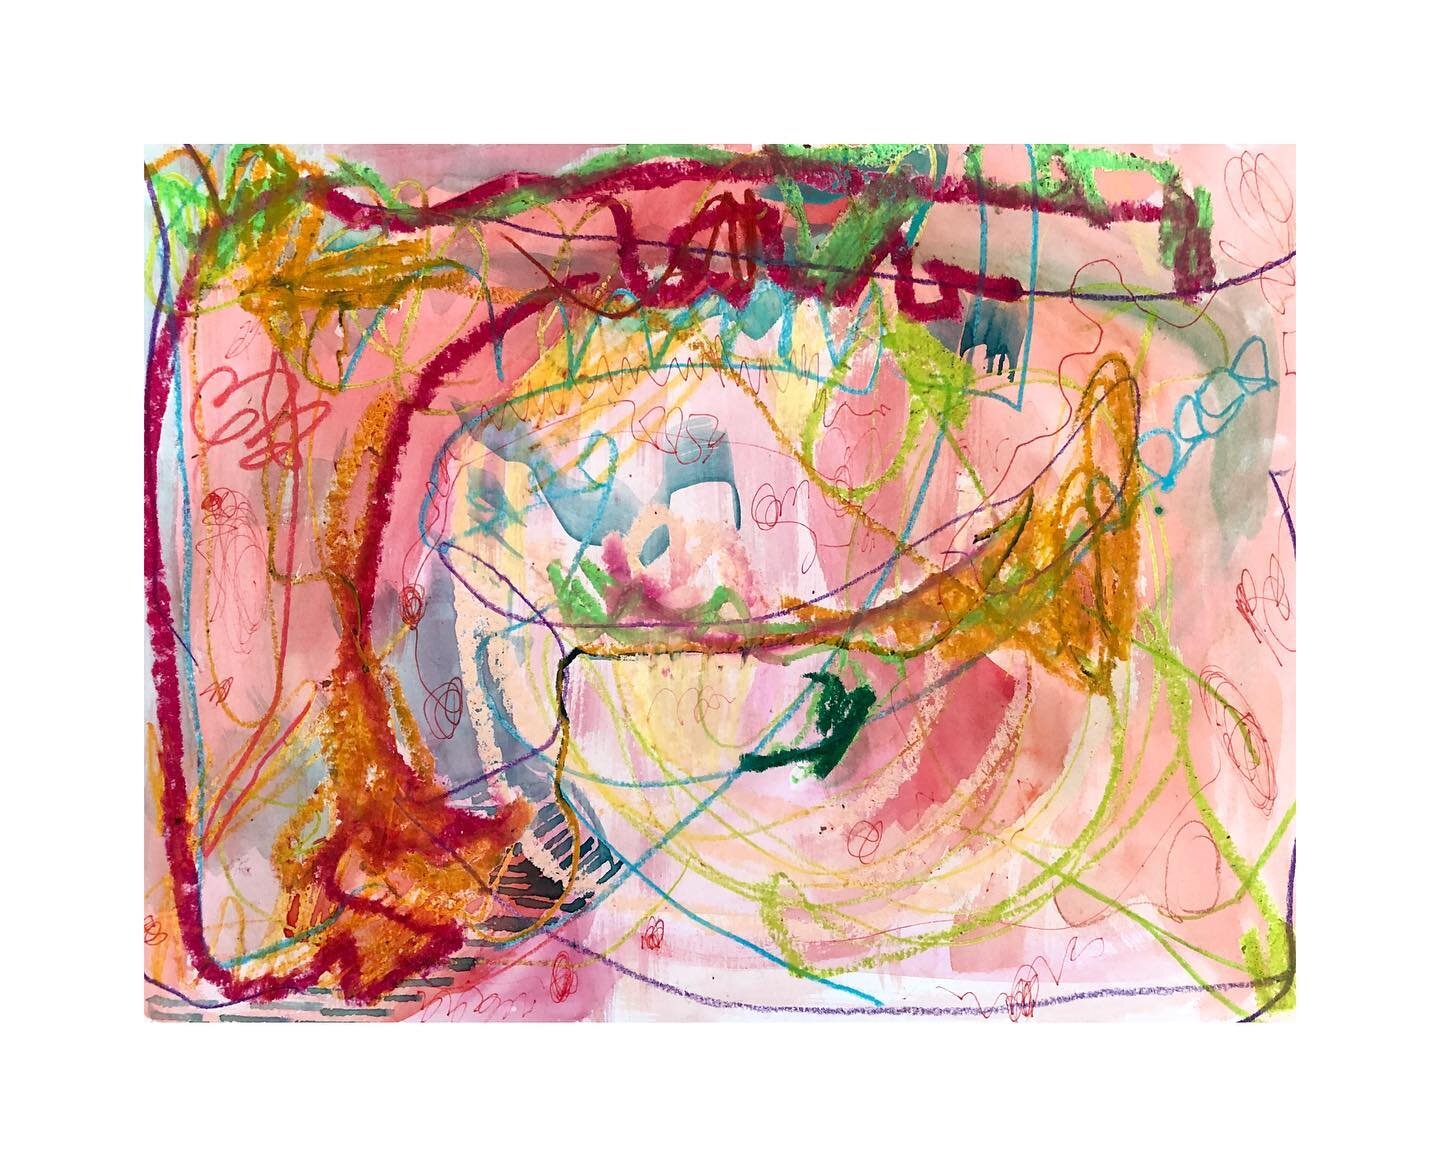 Sad fish 🐟

Gouache, oil stick, colored pencil on paper
9*12 inches 
2022